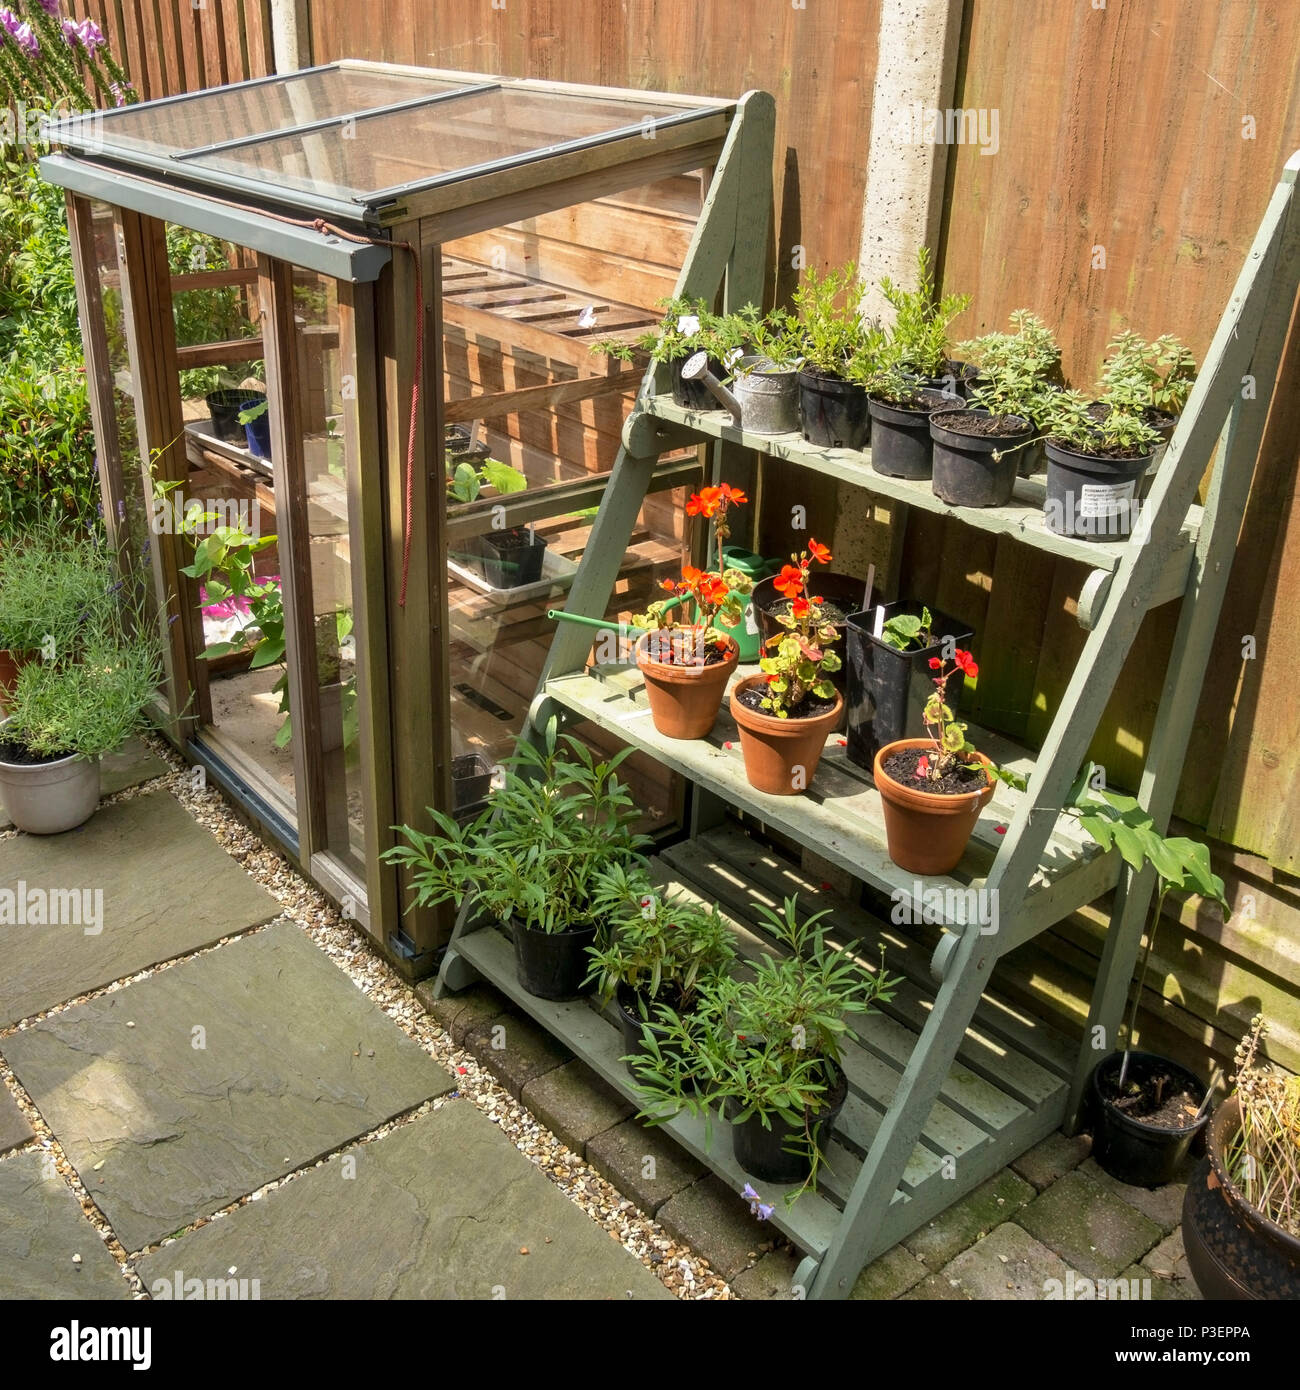 Gabriel Ash serre verticale à cadre froid et présentoir de mise en scène de plantes / théâtre sur une petite terrasse de jardin domestique Banque D'Images